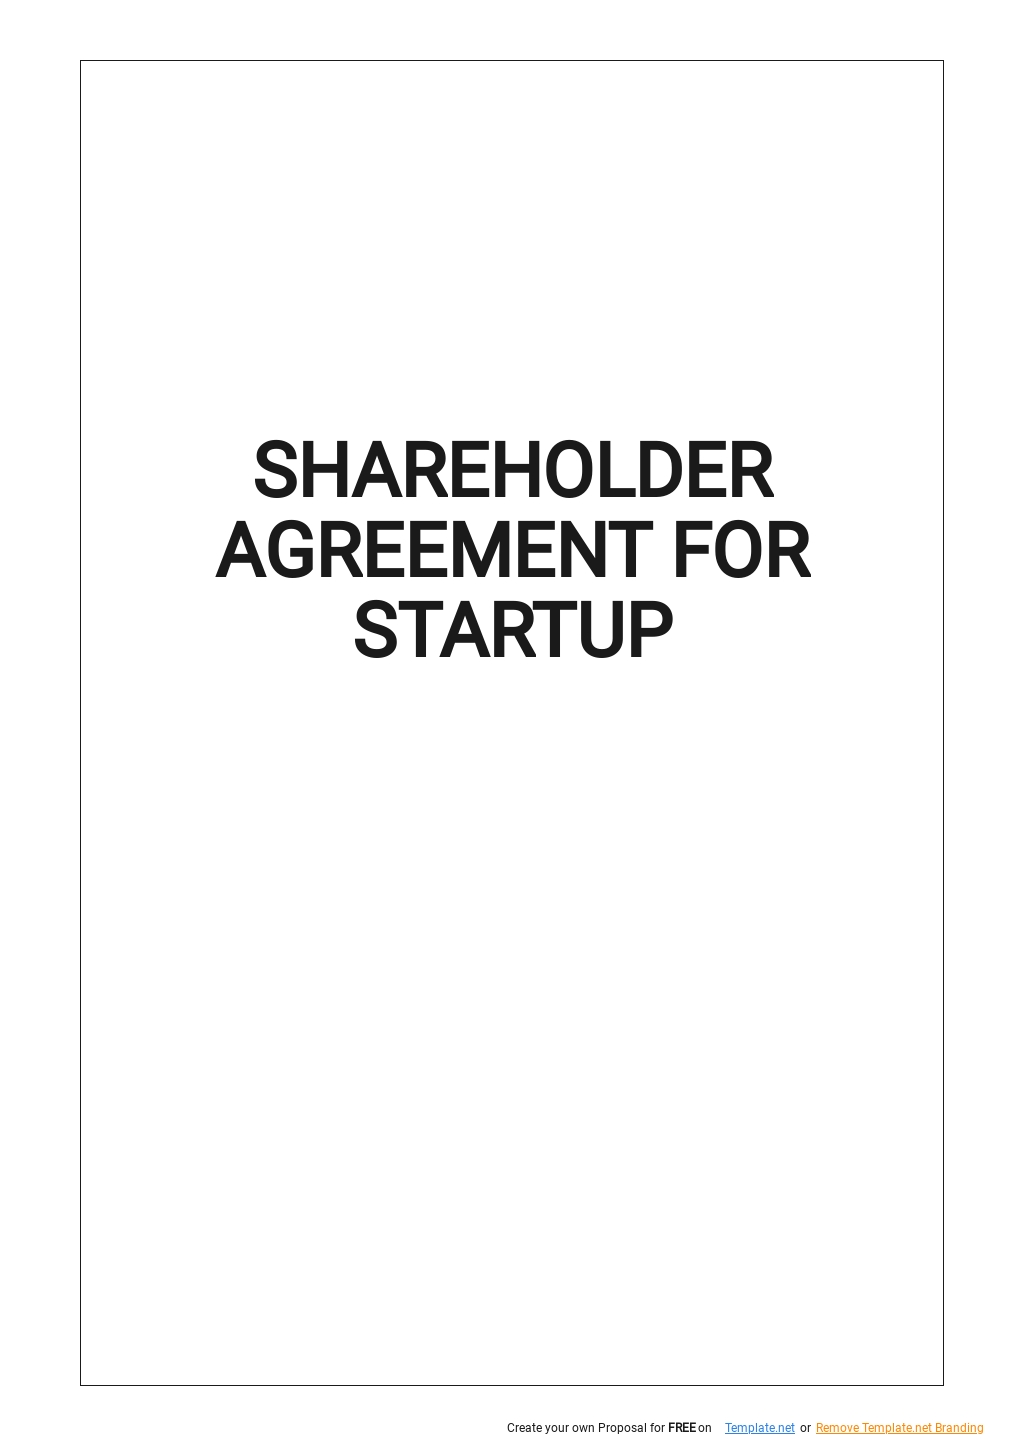 Free Sample Shareholder Agreement for Startup Template - Google With sample shareholder agreement for startup